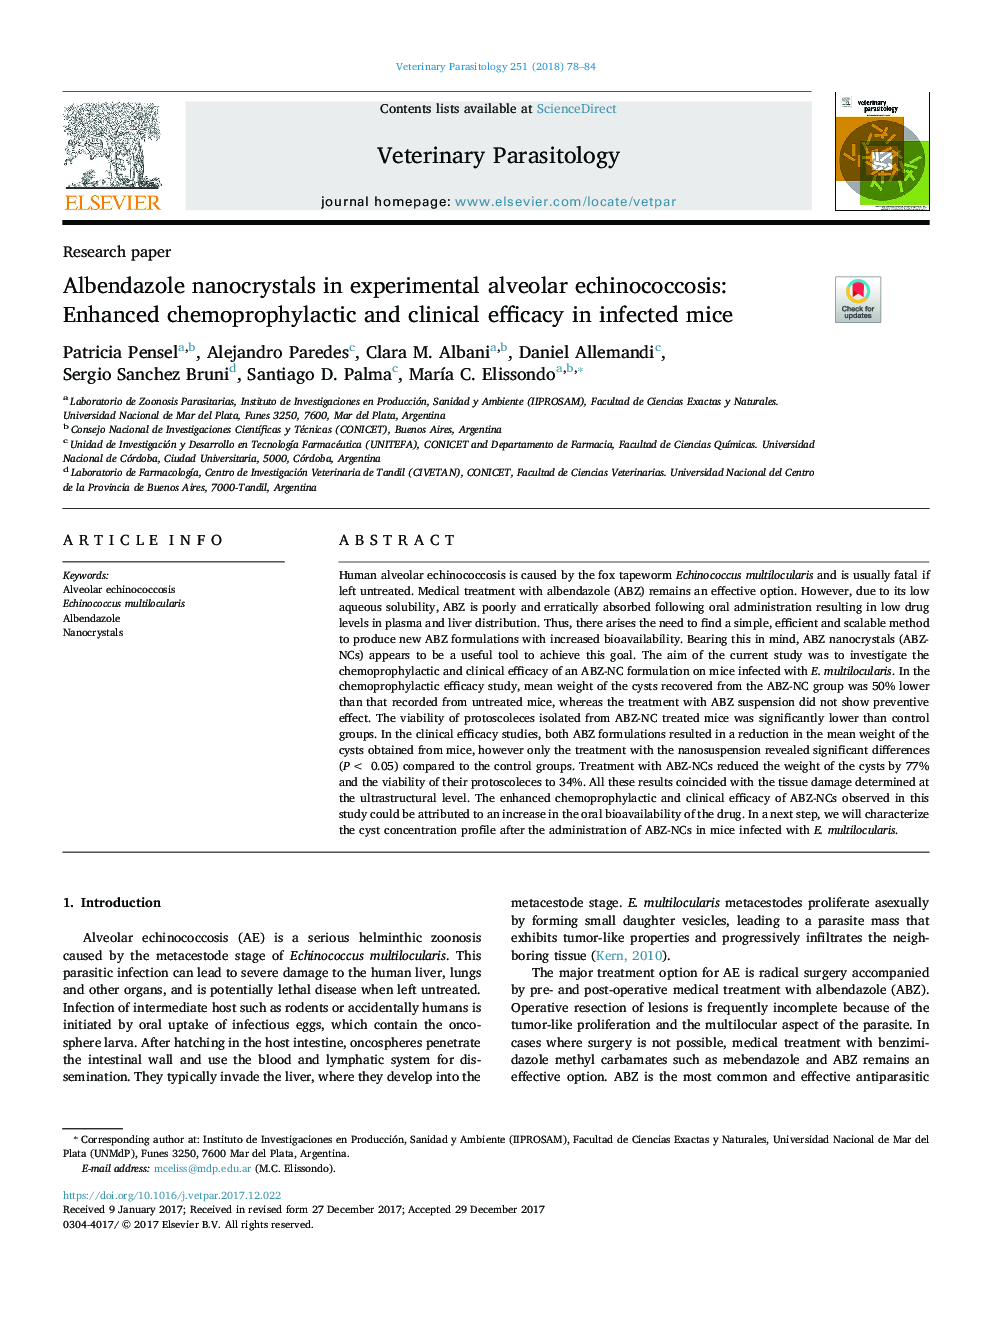 نانوکریستال آلبندازول در اکینوکوکوز آلوئولر تجربی: بهبود شیمی درمانی و اثربخشی بالینی در موشهای آلوده 